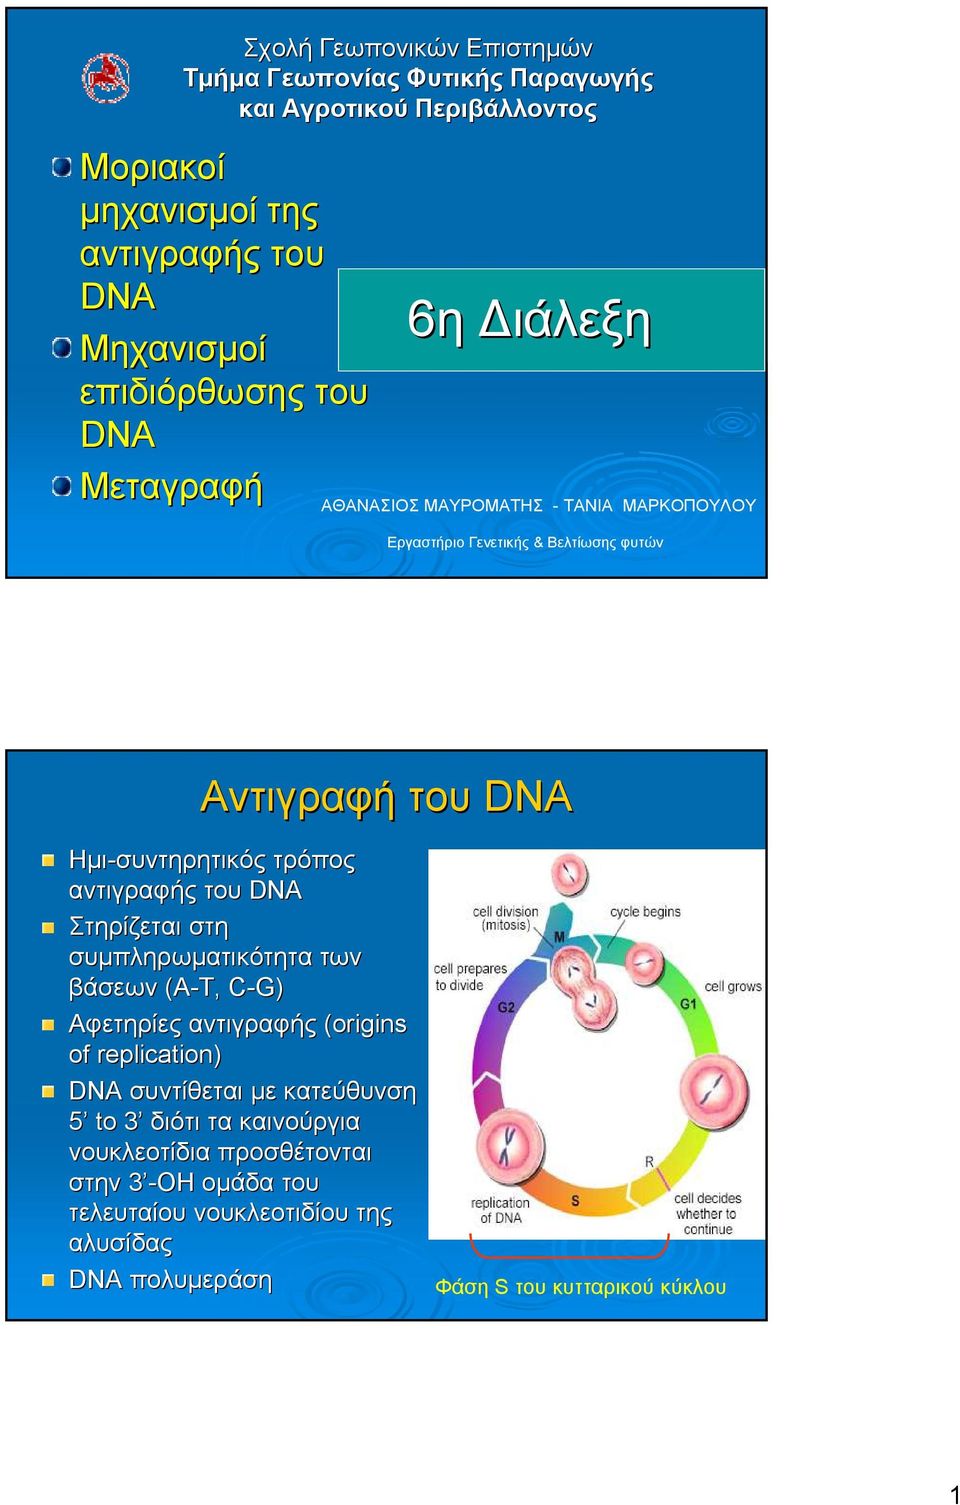 Ηµι-συντηρητικός τρόπος αντιγραφής του DNA Στηρίζεται στη συµπληρωµατικότητα των βάσεων (Α-Τ, C-G) Αφετηρίες αντιγραφής (origins( of replication) DNA